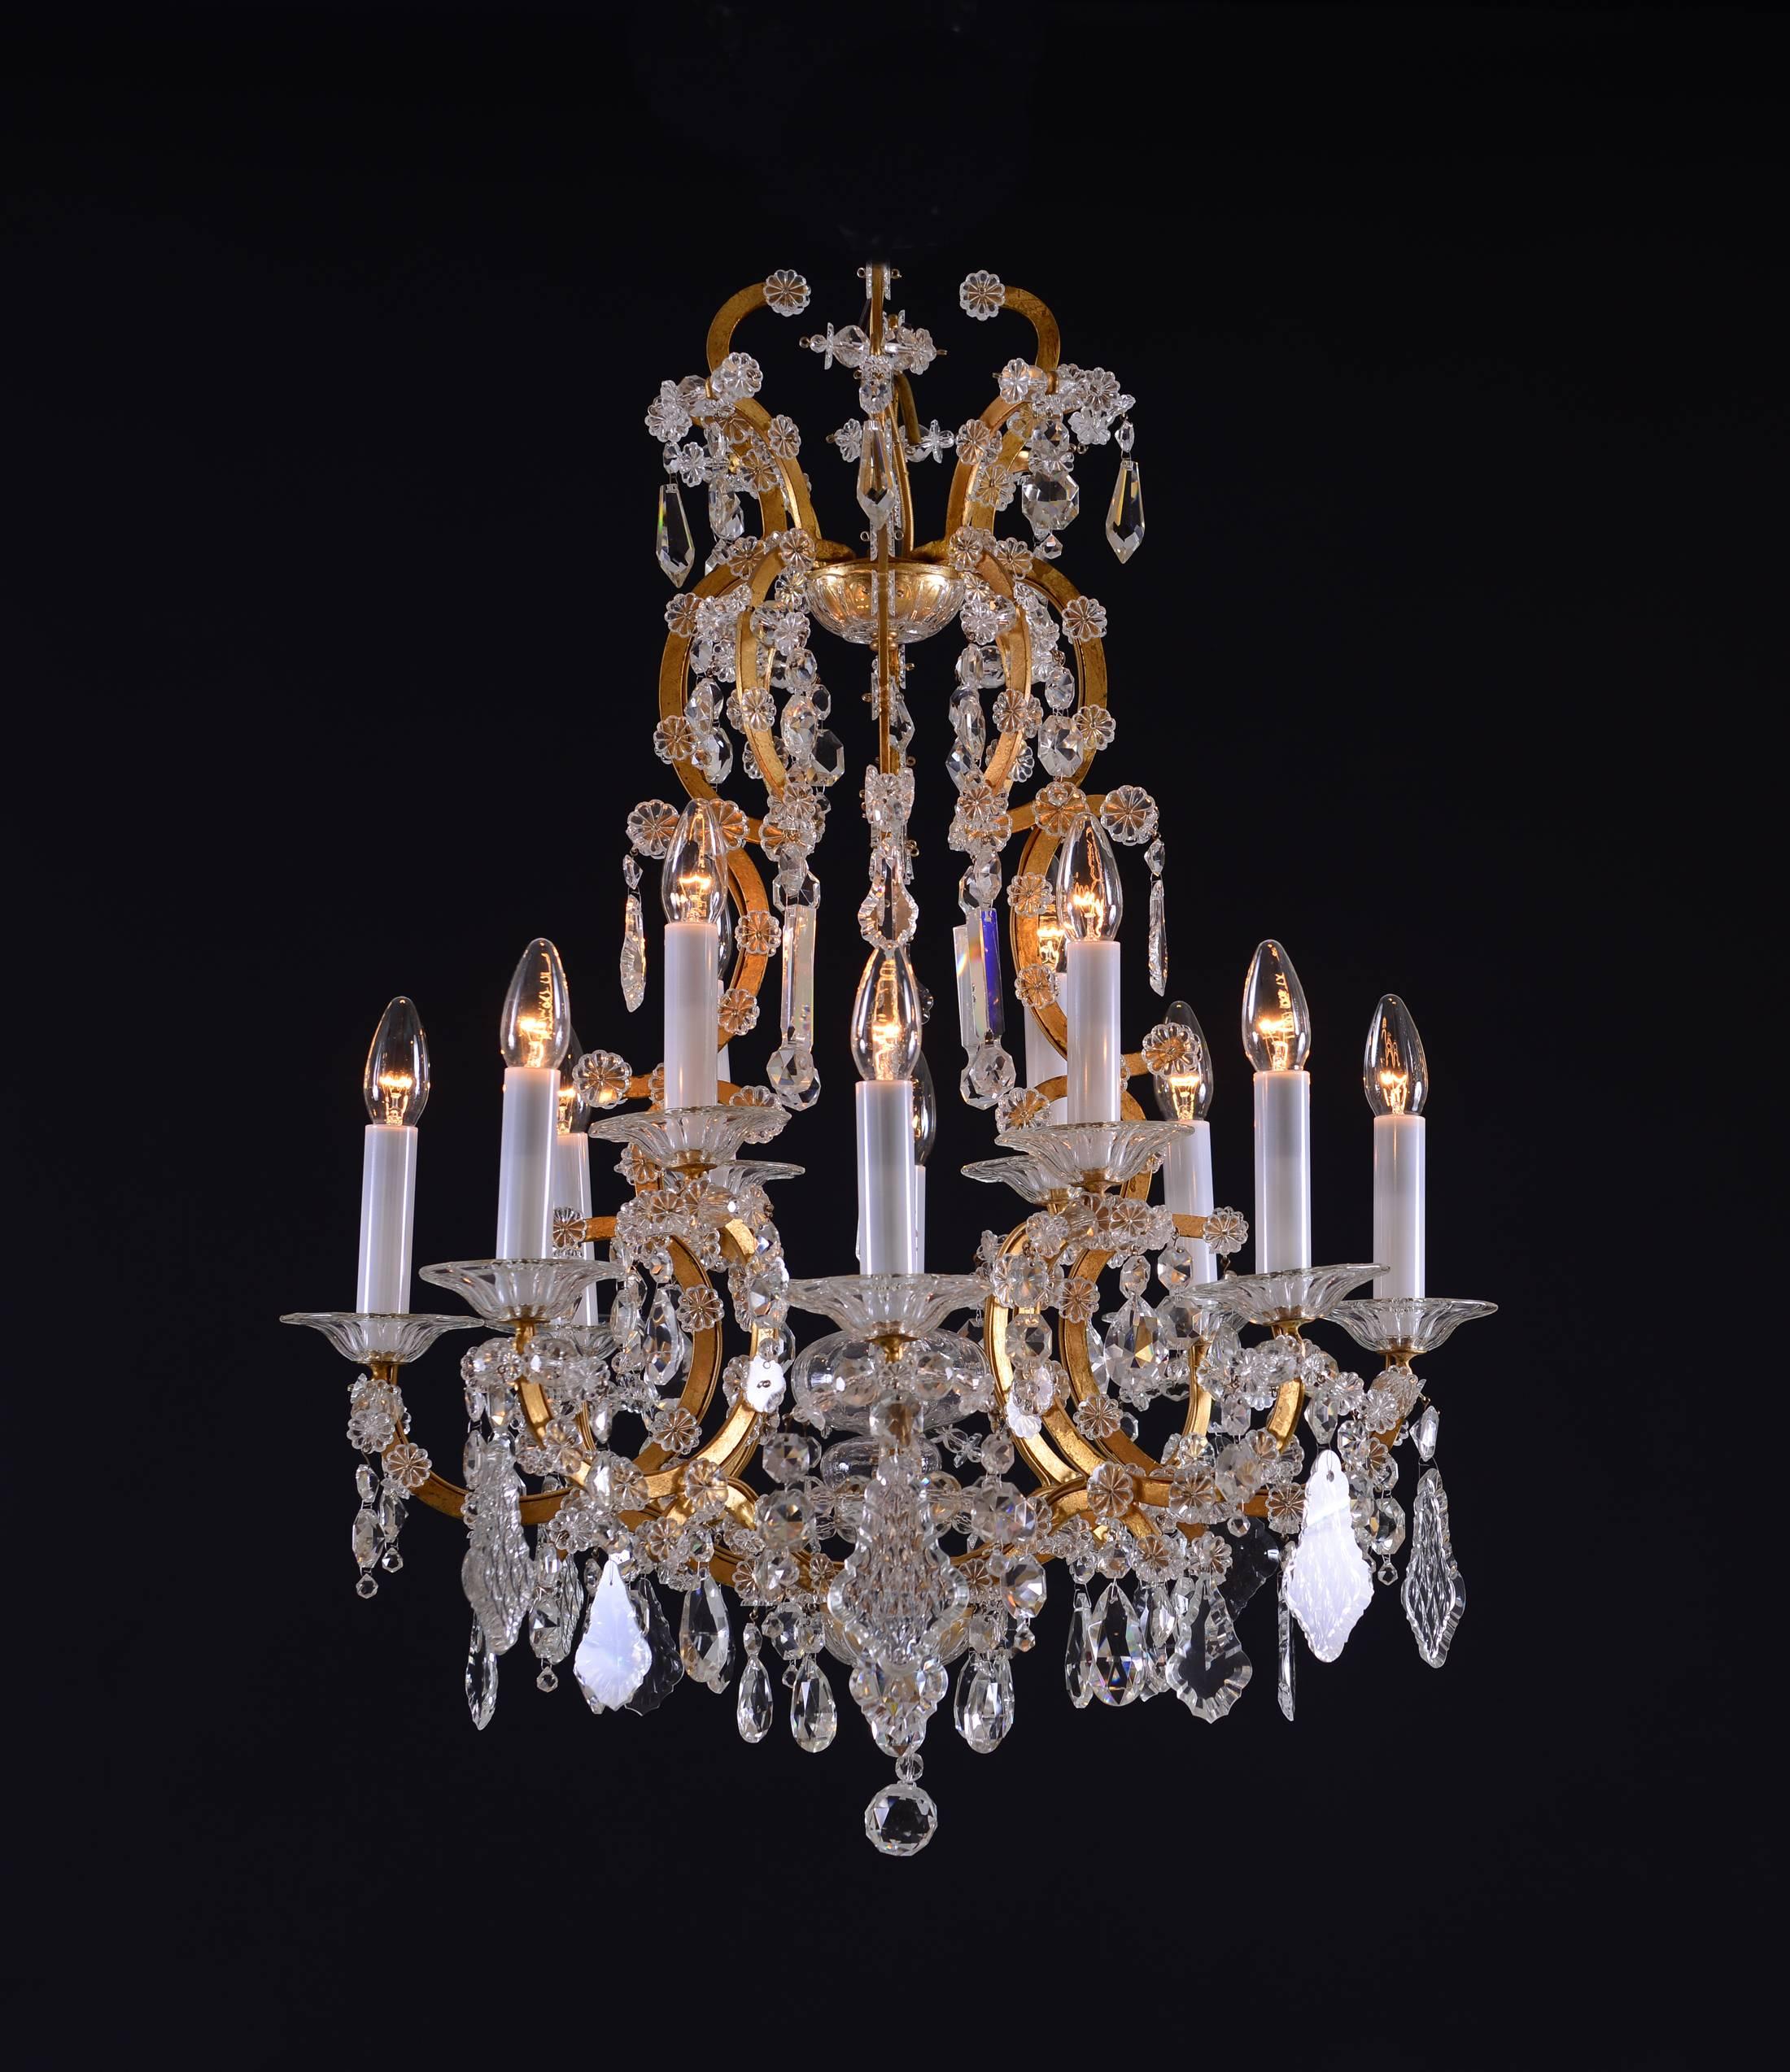 the horse chandelier by el jewel lighting